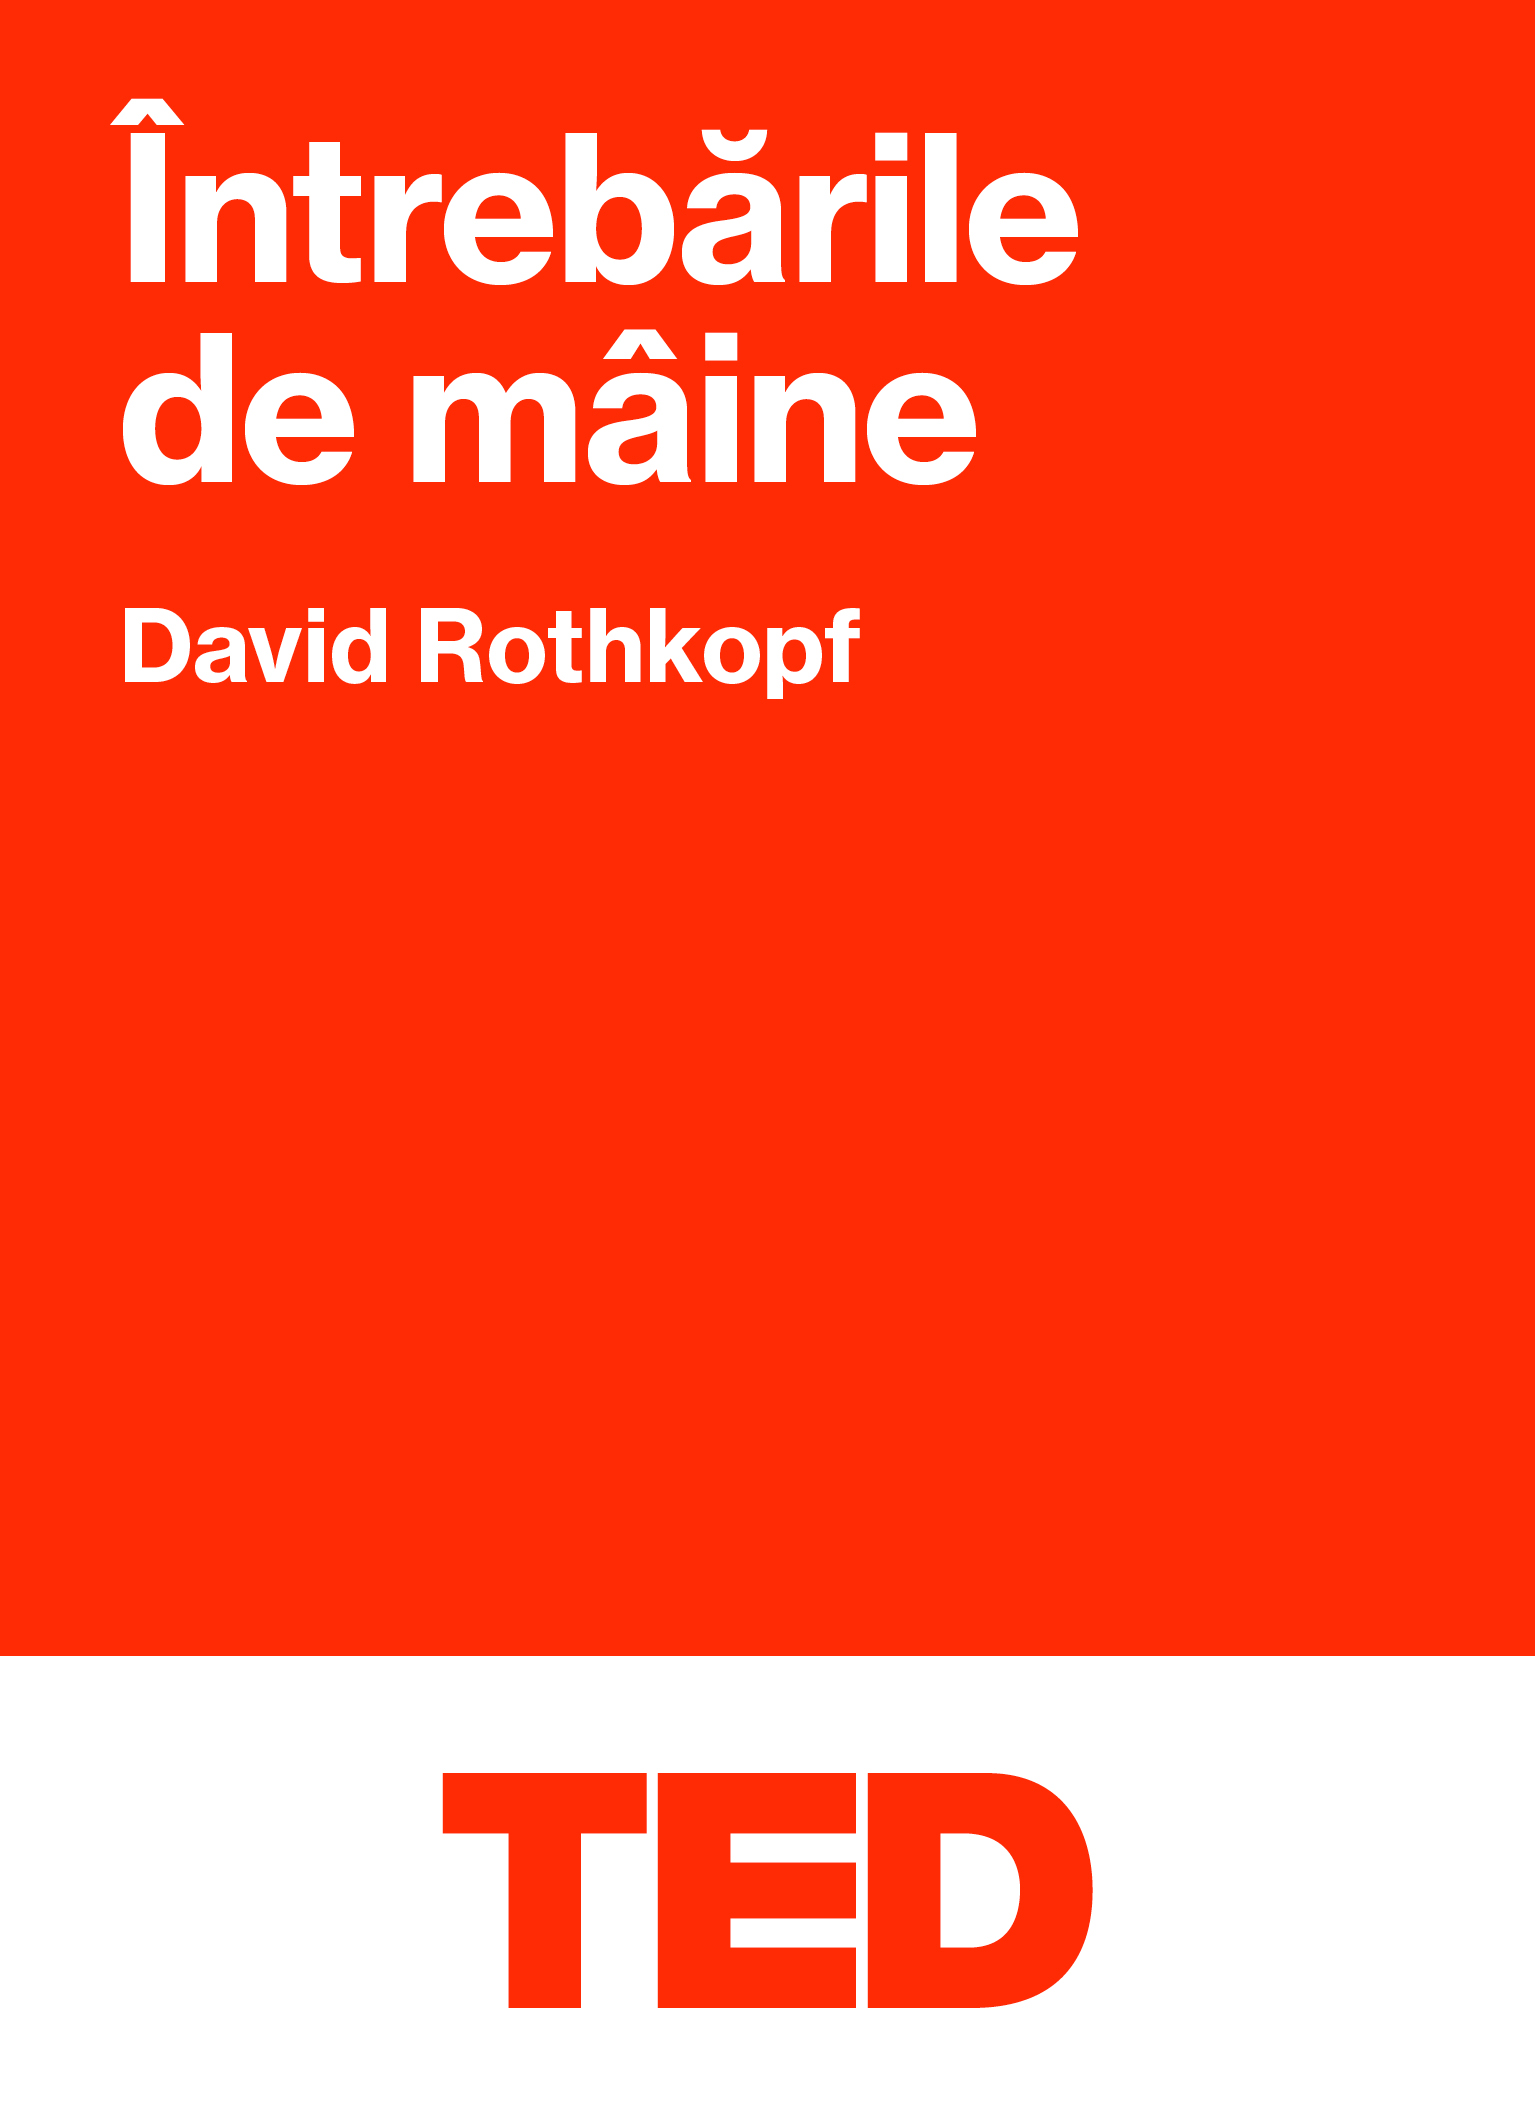 TED – Intrebarile de maine | David Rothkopf Black Button Books imagine 2022